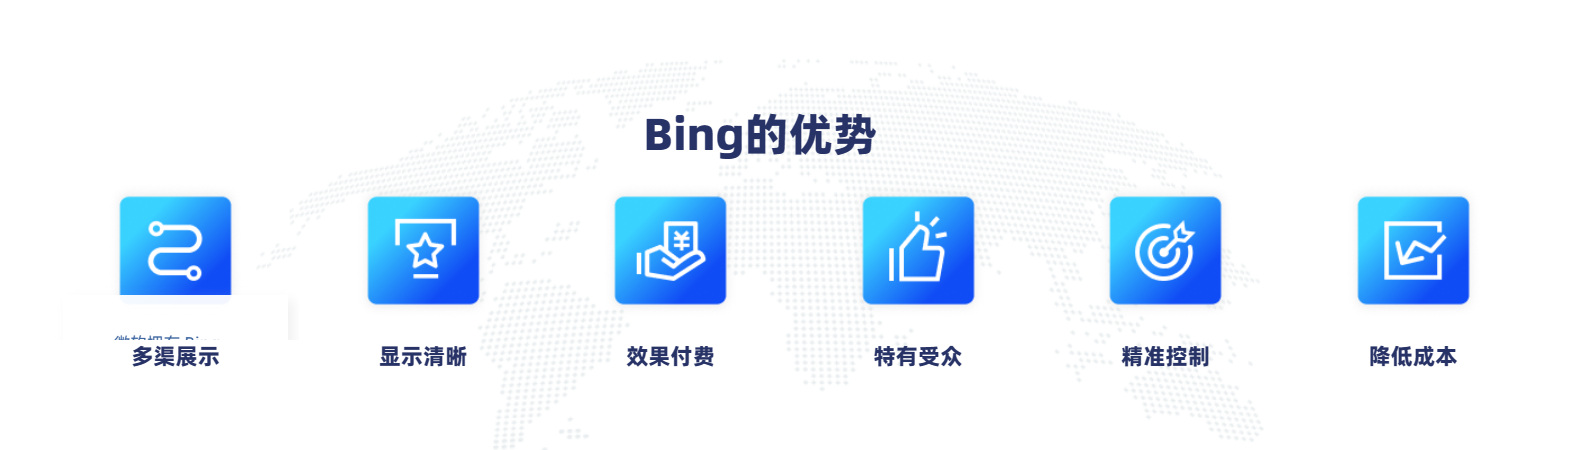 必应Bing国际端广告投放-开户代运营